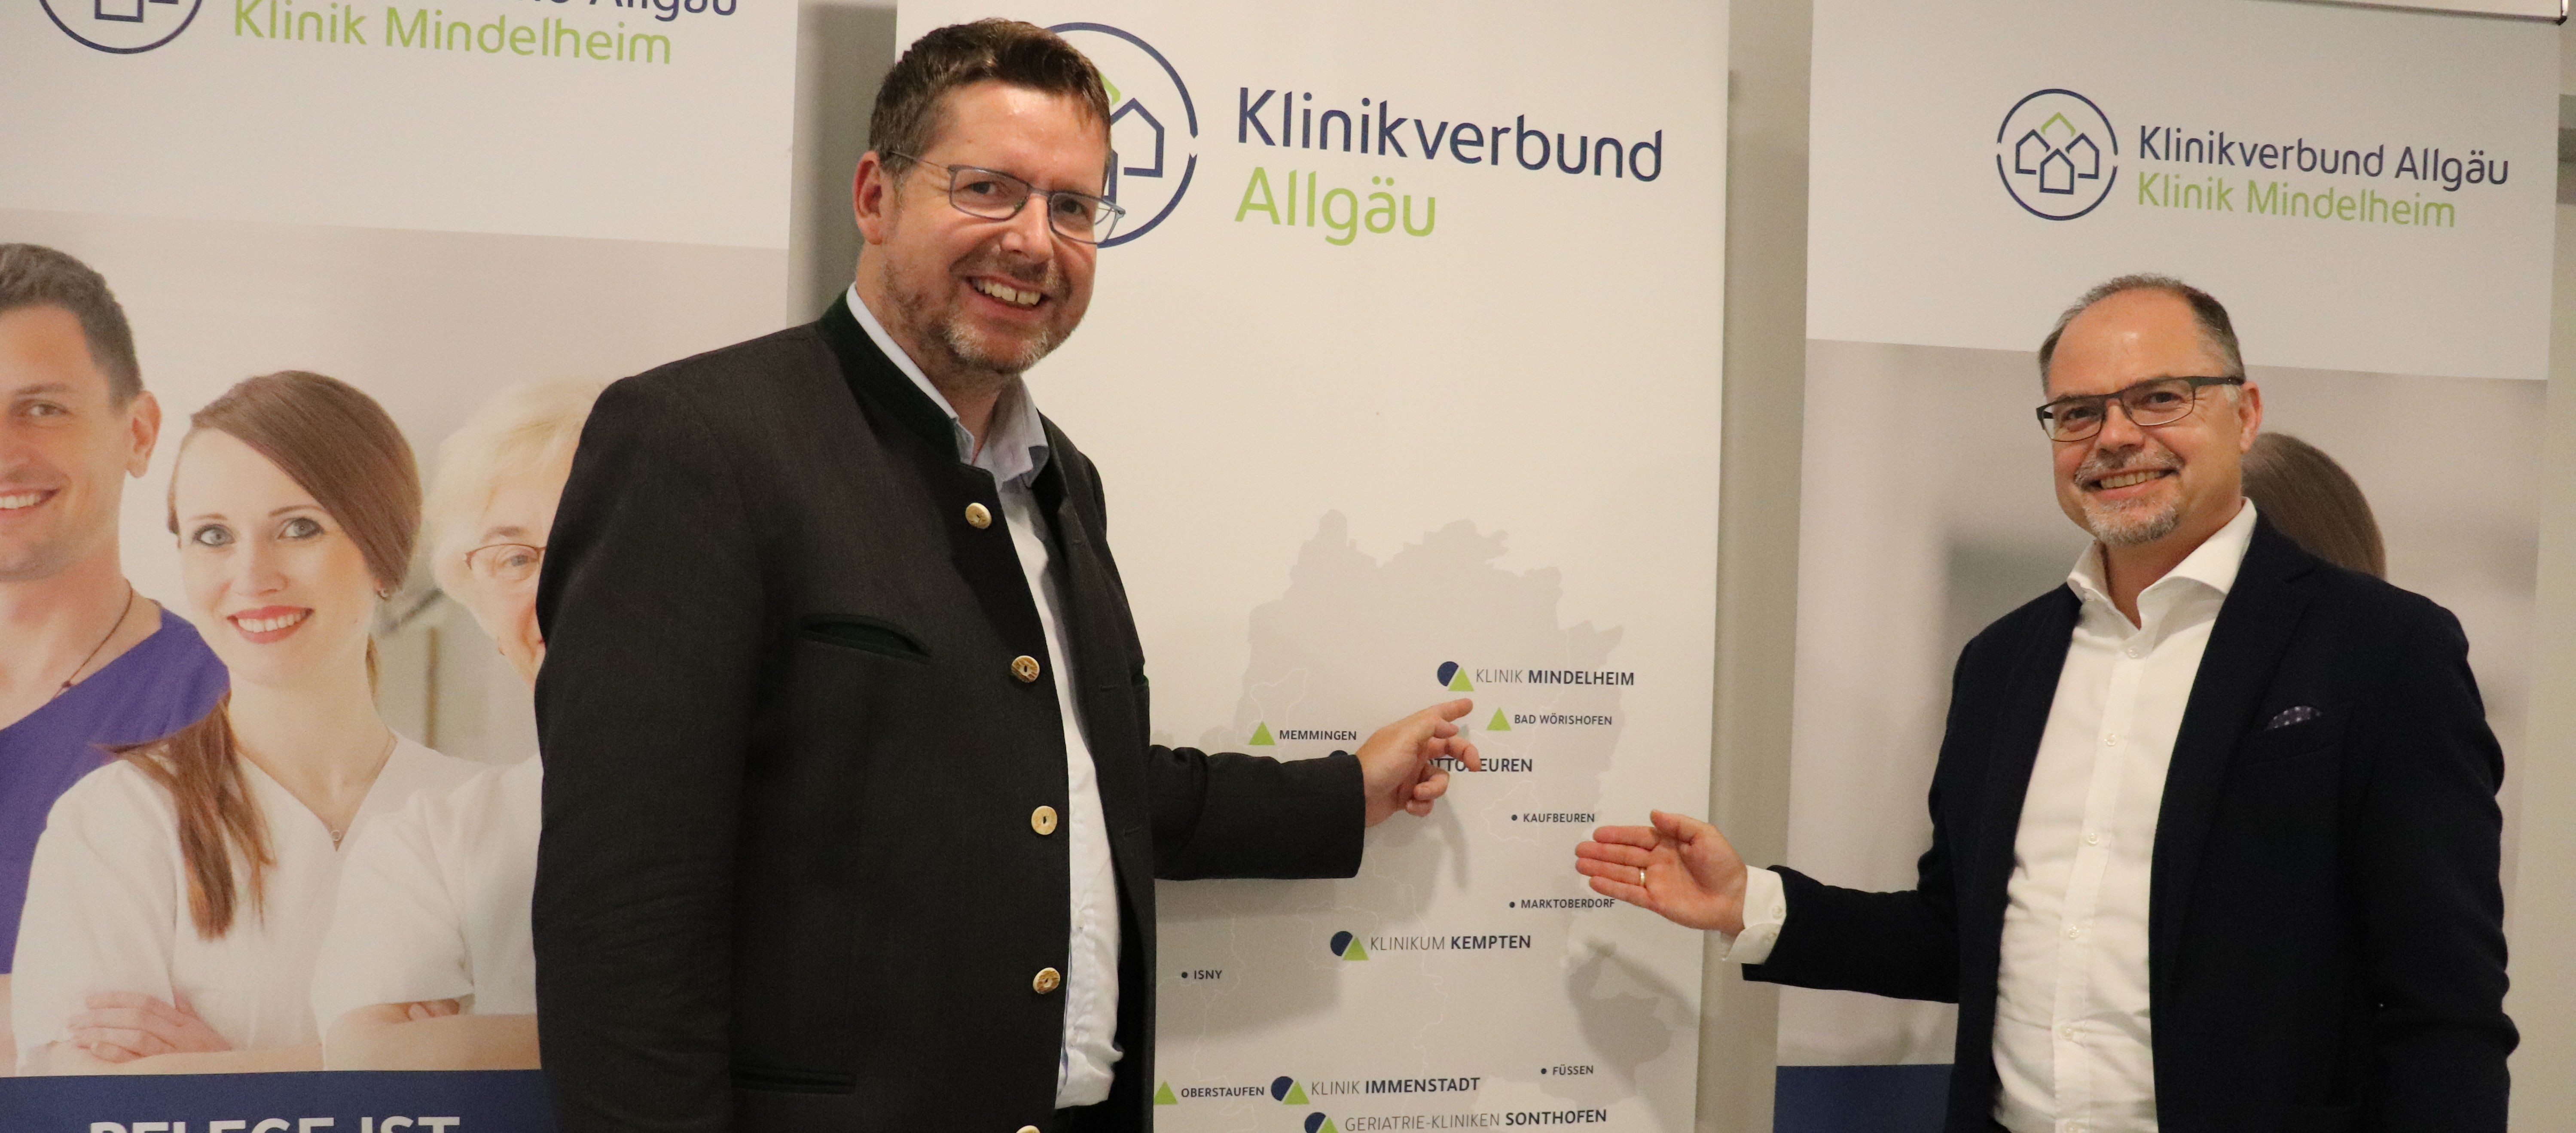 Mit dem Geschäftsführer der Kliniken Mindelheim und Ottobeuren Florian Glück sprach Stephan Stracke über die Digitalisierung der klinikinternen Prozesse und den Fachkräftemangel im Bereich der Ärzte und der Pflege.